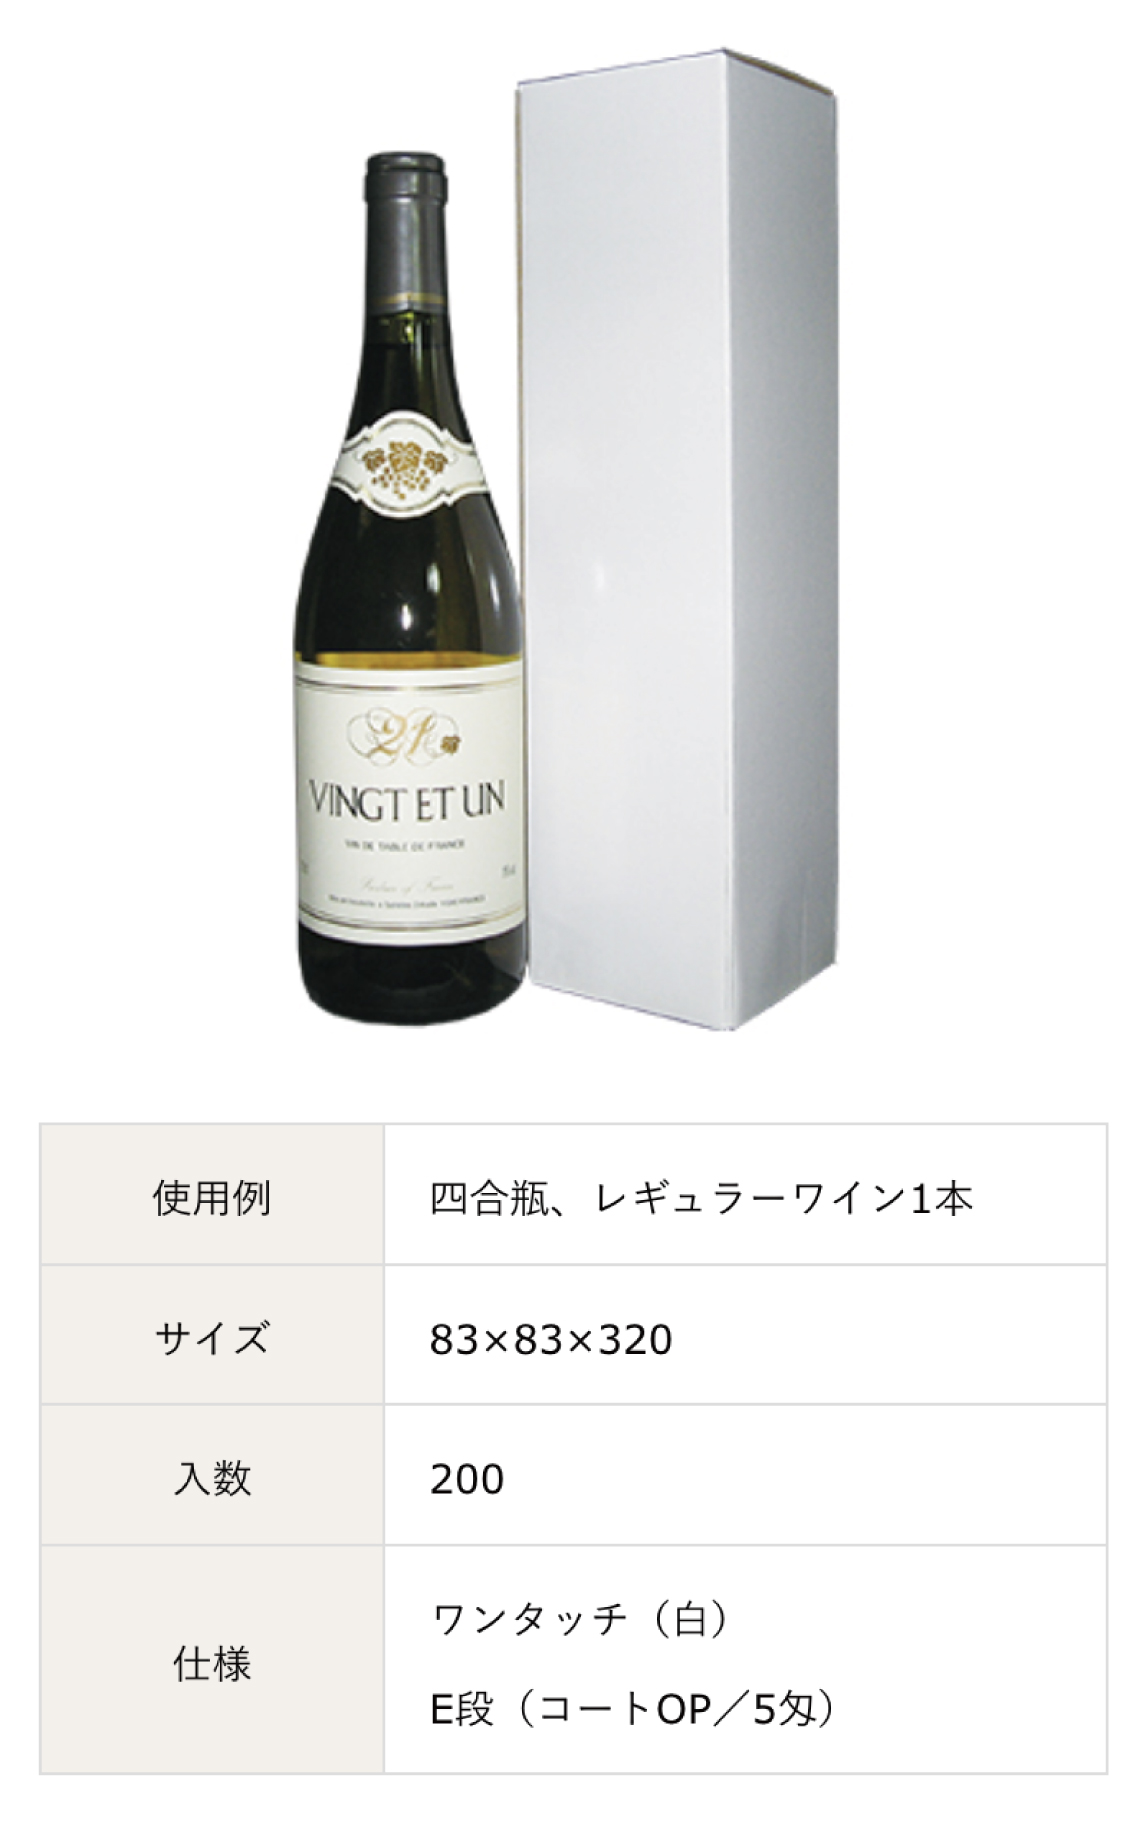 レギュラーワイン用、日本酒・ワイン・ウィスキー・ビール・シャンパンなどの既製サイズの箱